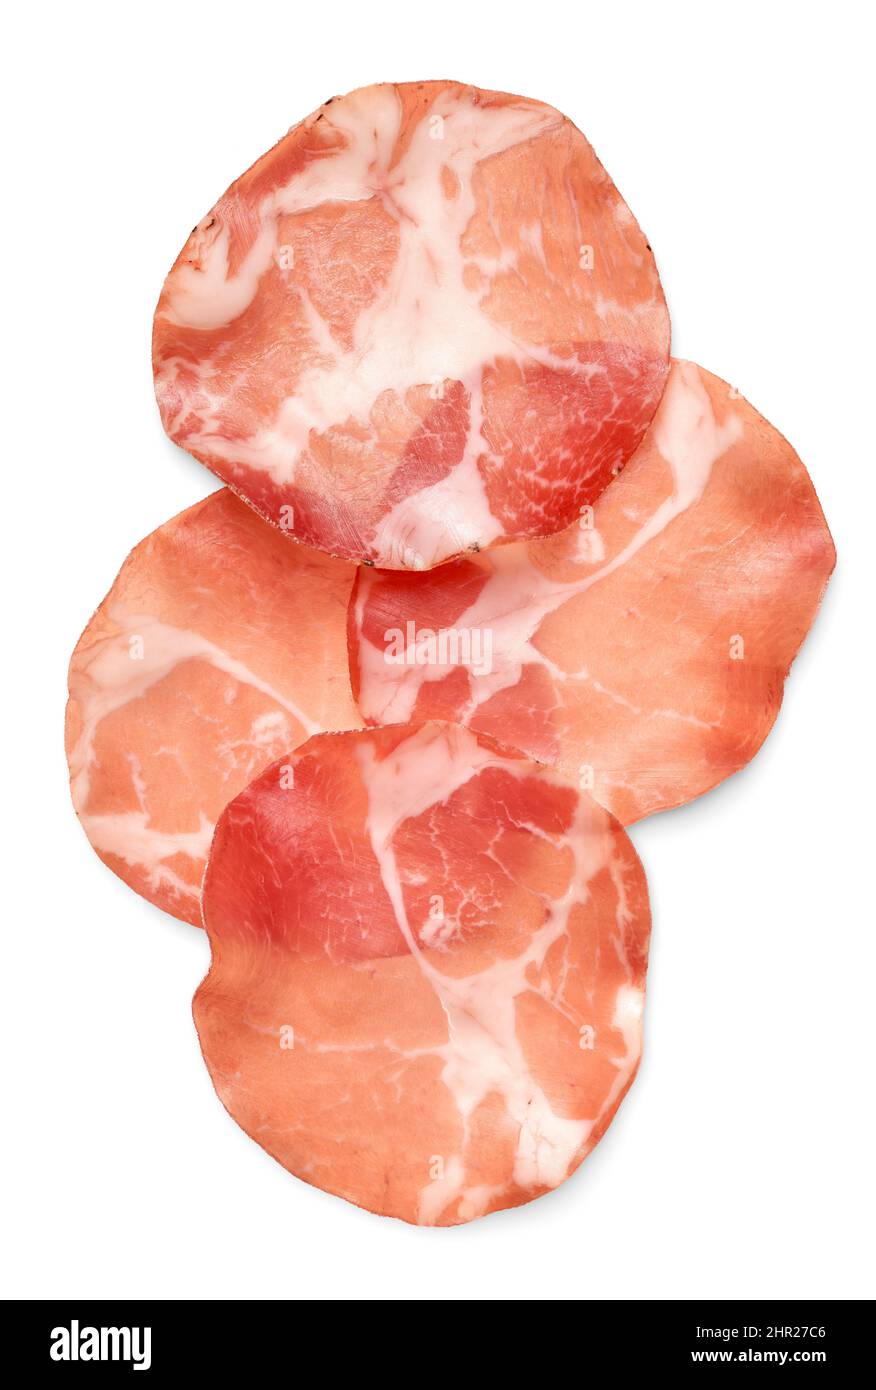 Comida y bebida: Rebanadas finas de carne de cerdo curada, aisladas sobre fondo blanco Foto de stock